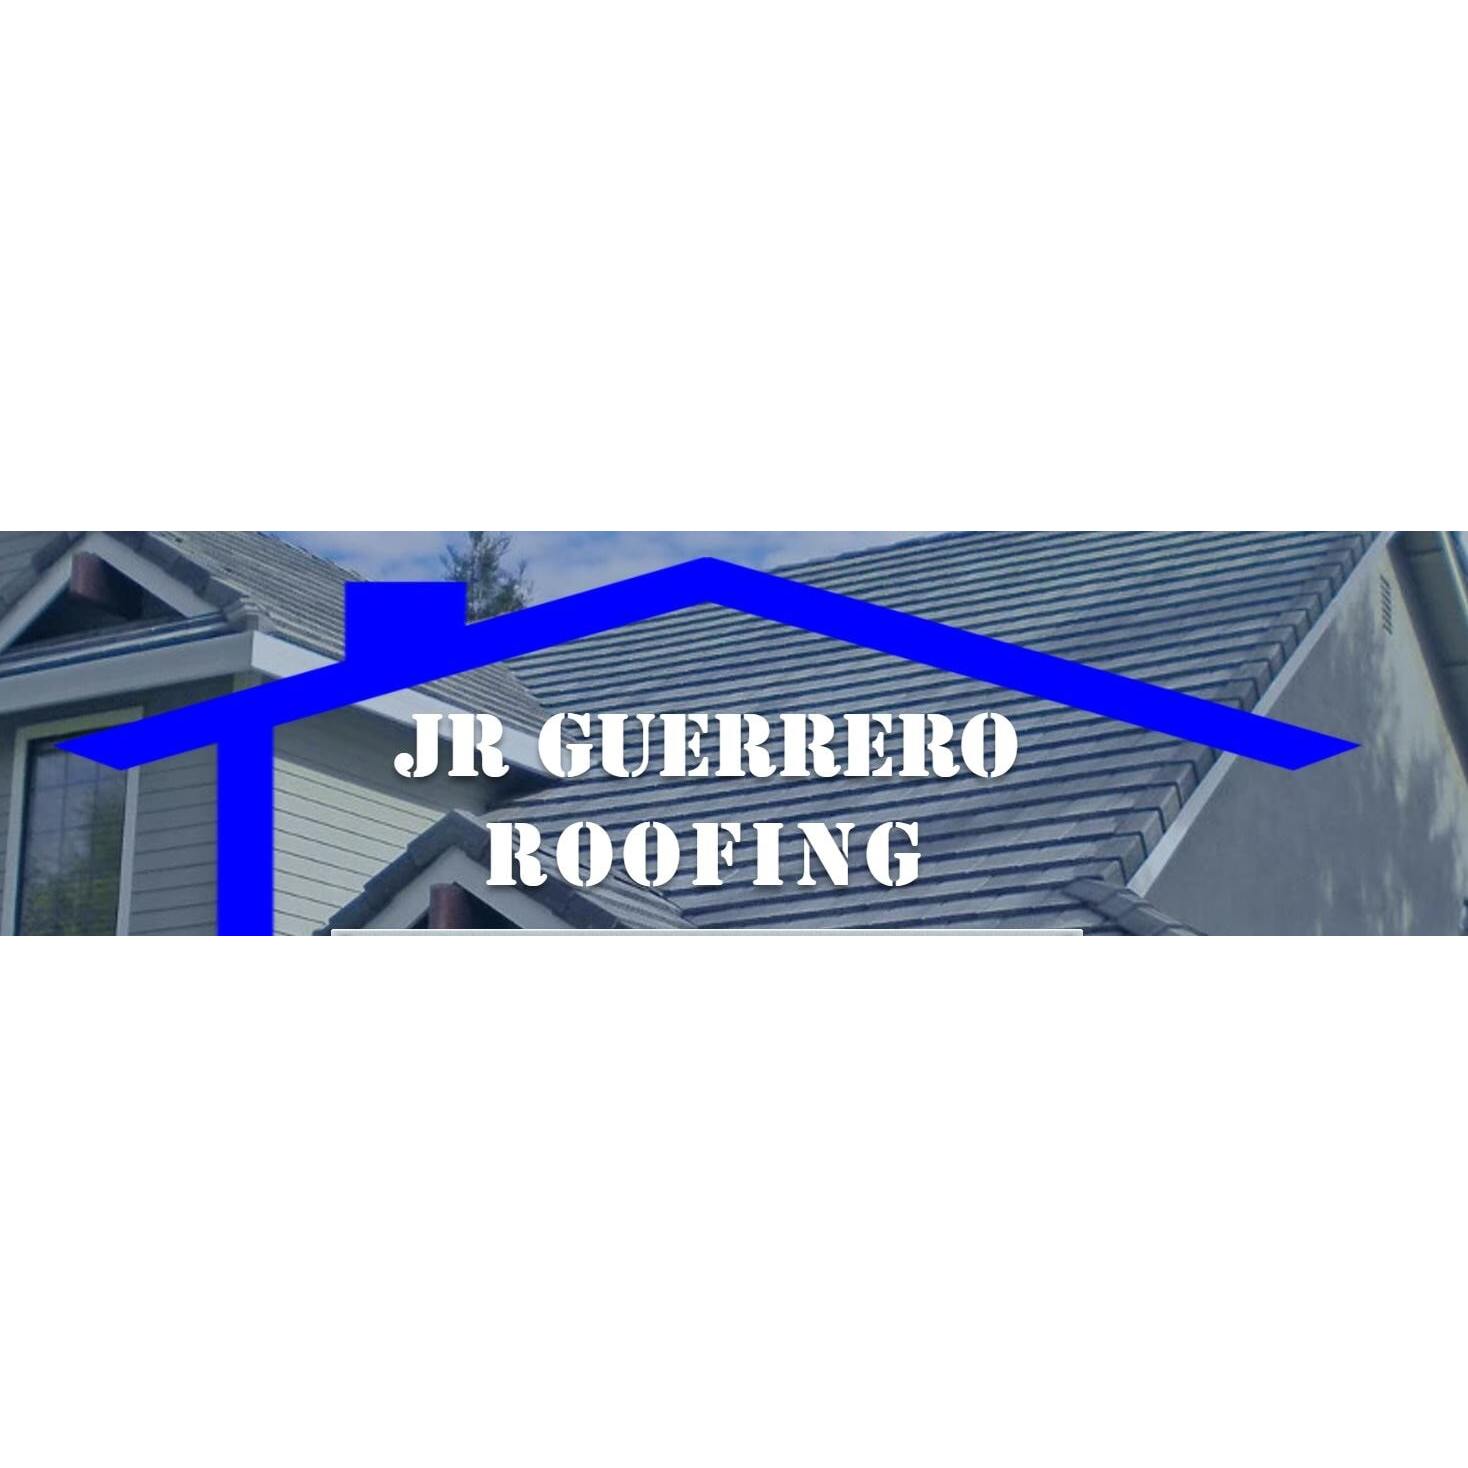 Jr Guerrero Roofing Co. San Antonio (210)432-3516